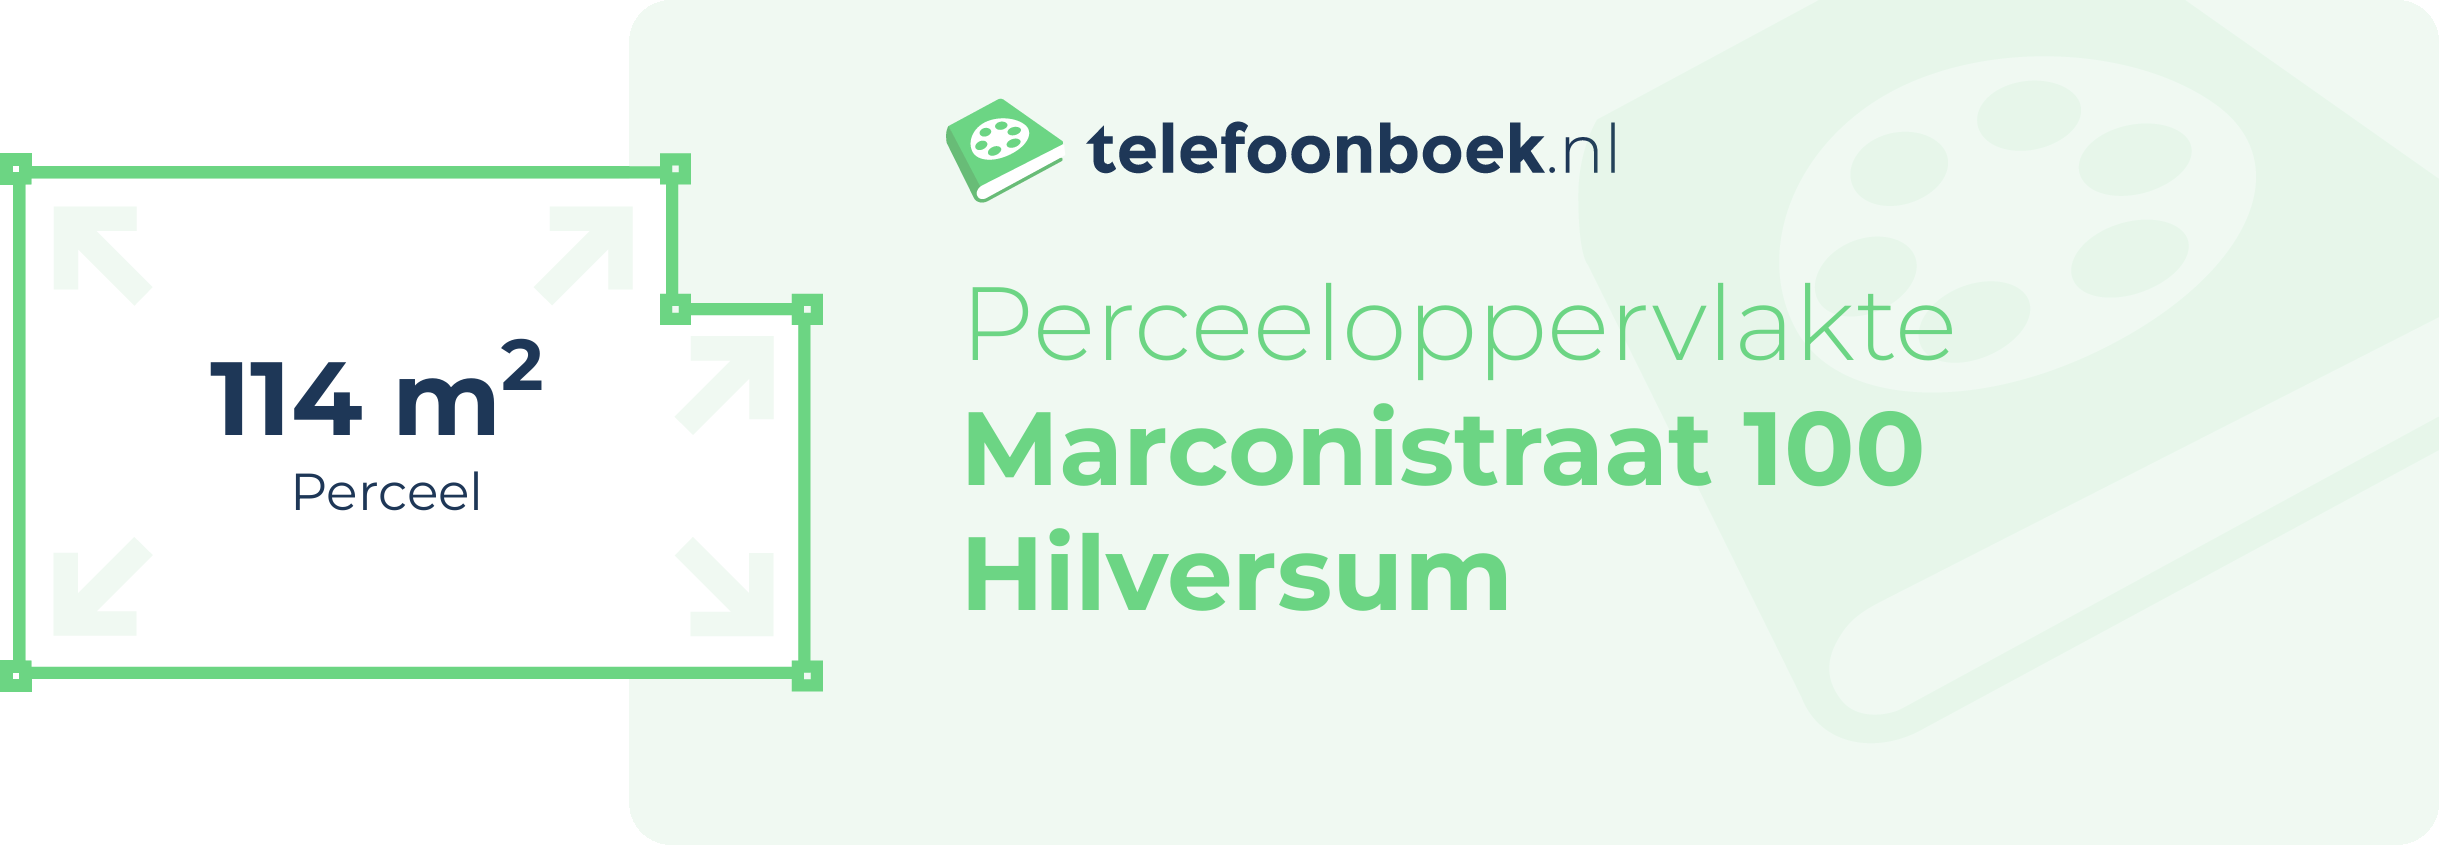 Perceeloppervlakte Marconistraat 100 Hilversum